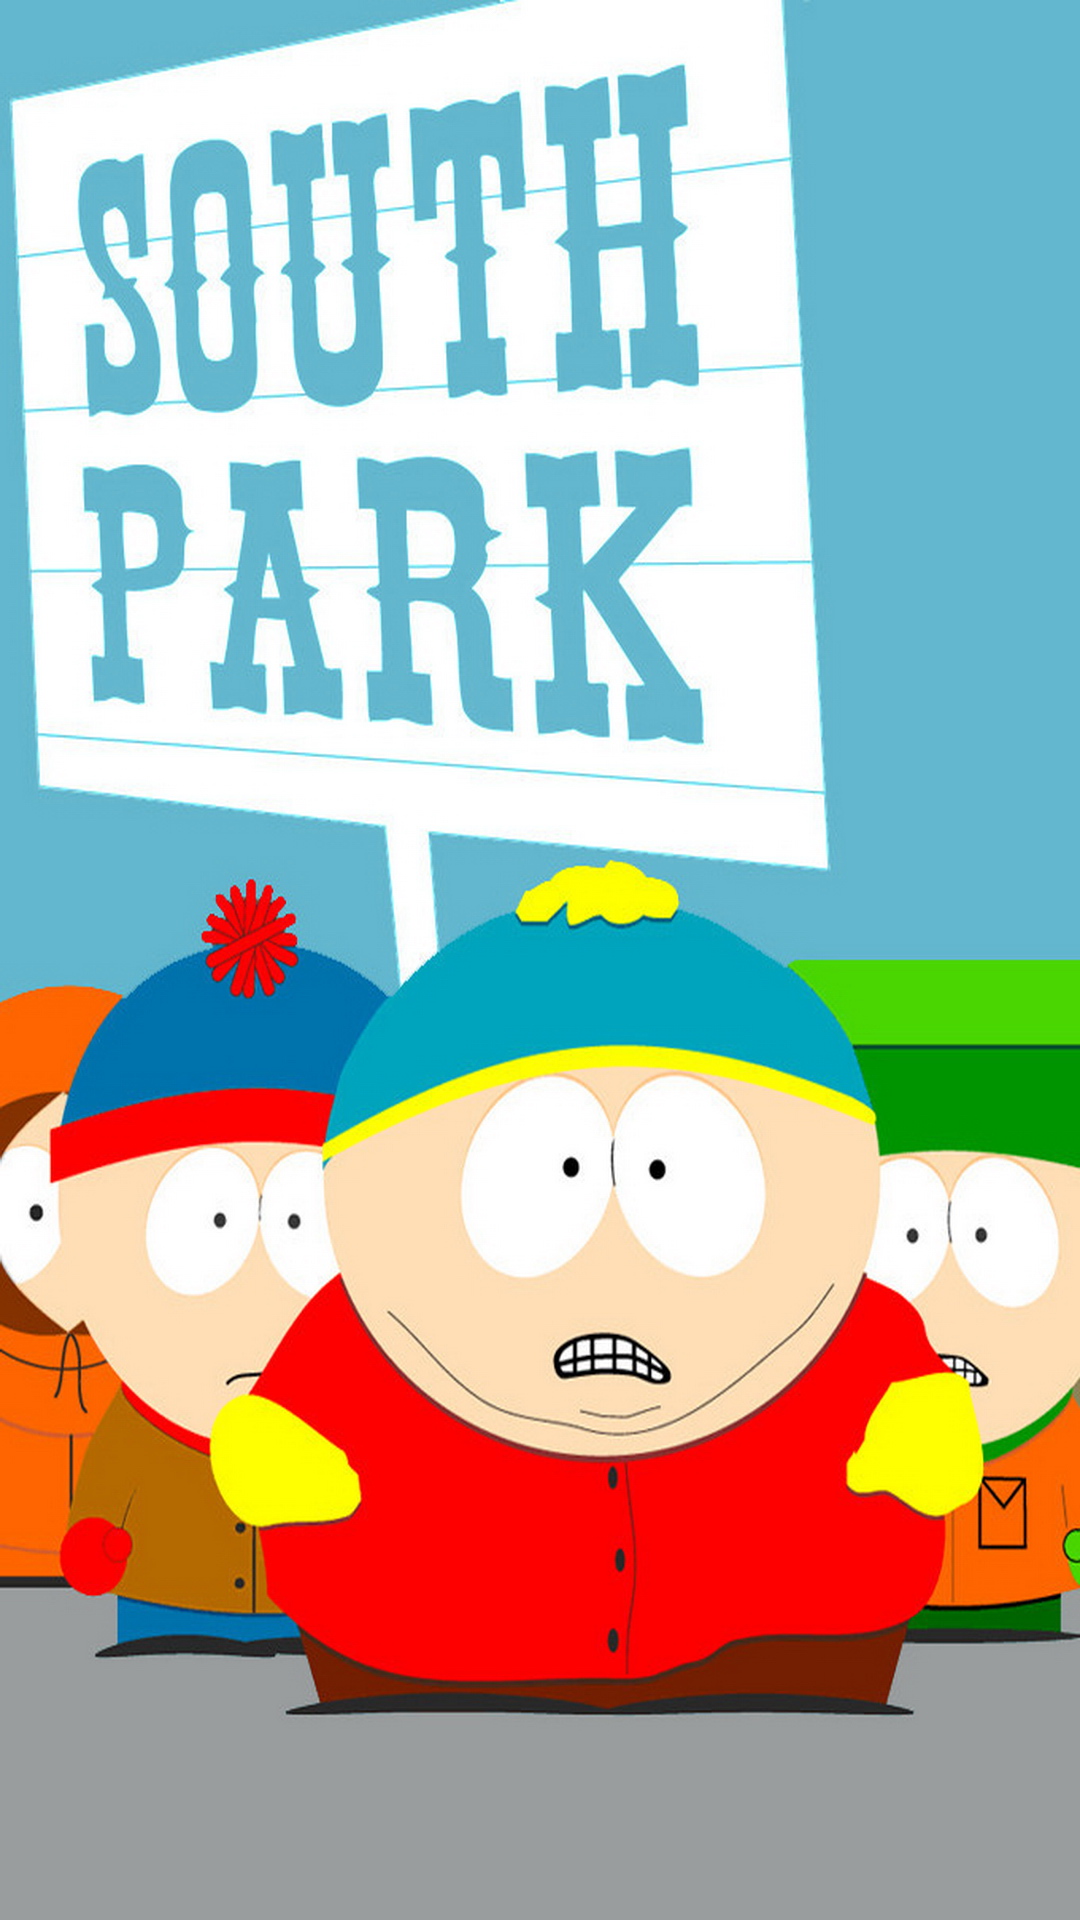 HD South Park Wallpapers - WallpaperSafari